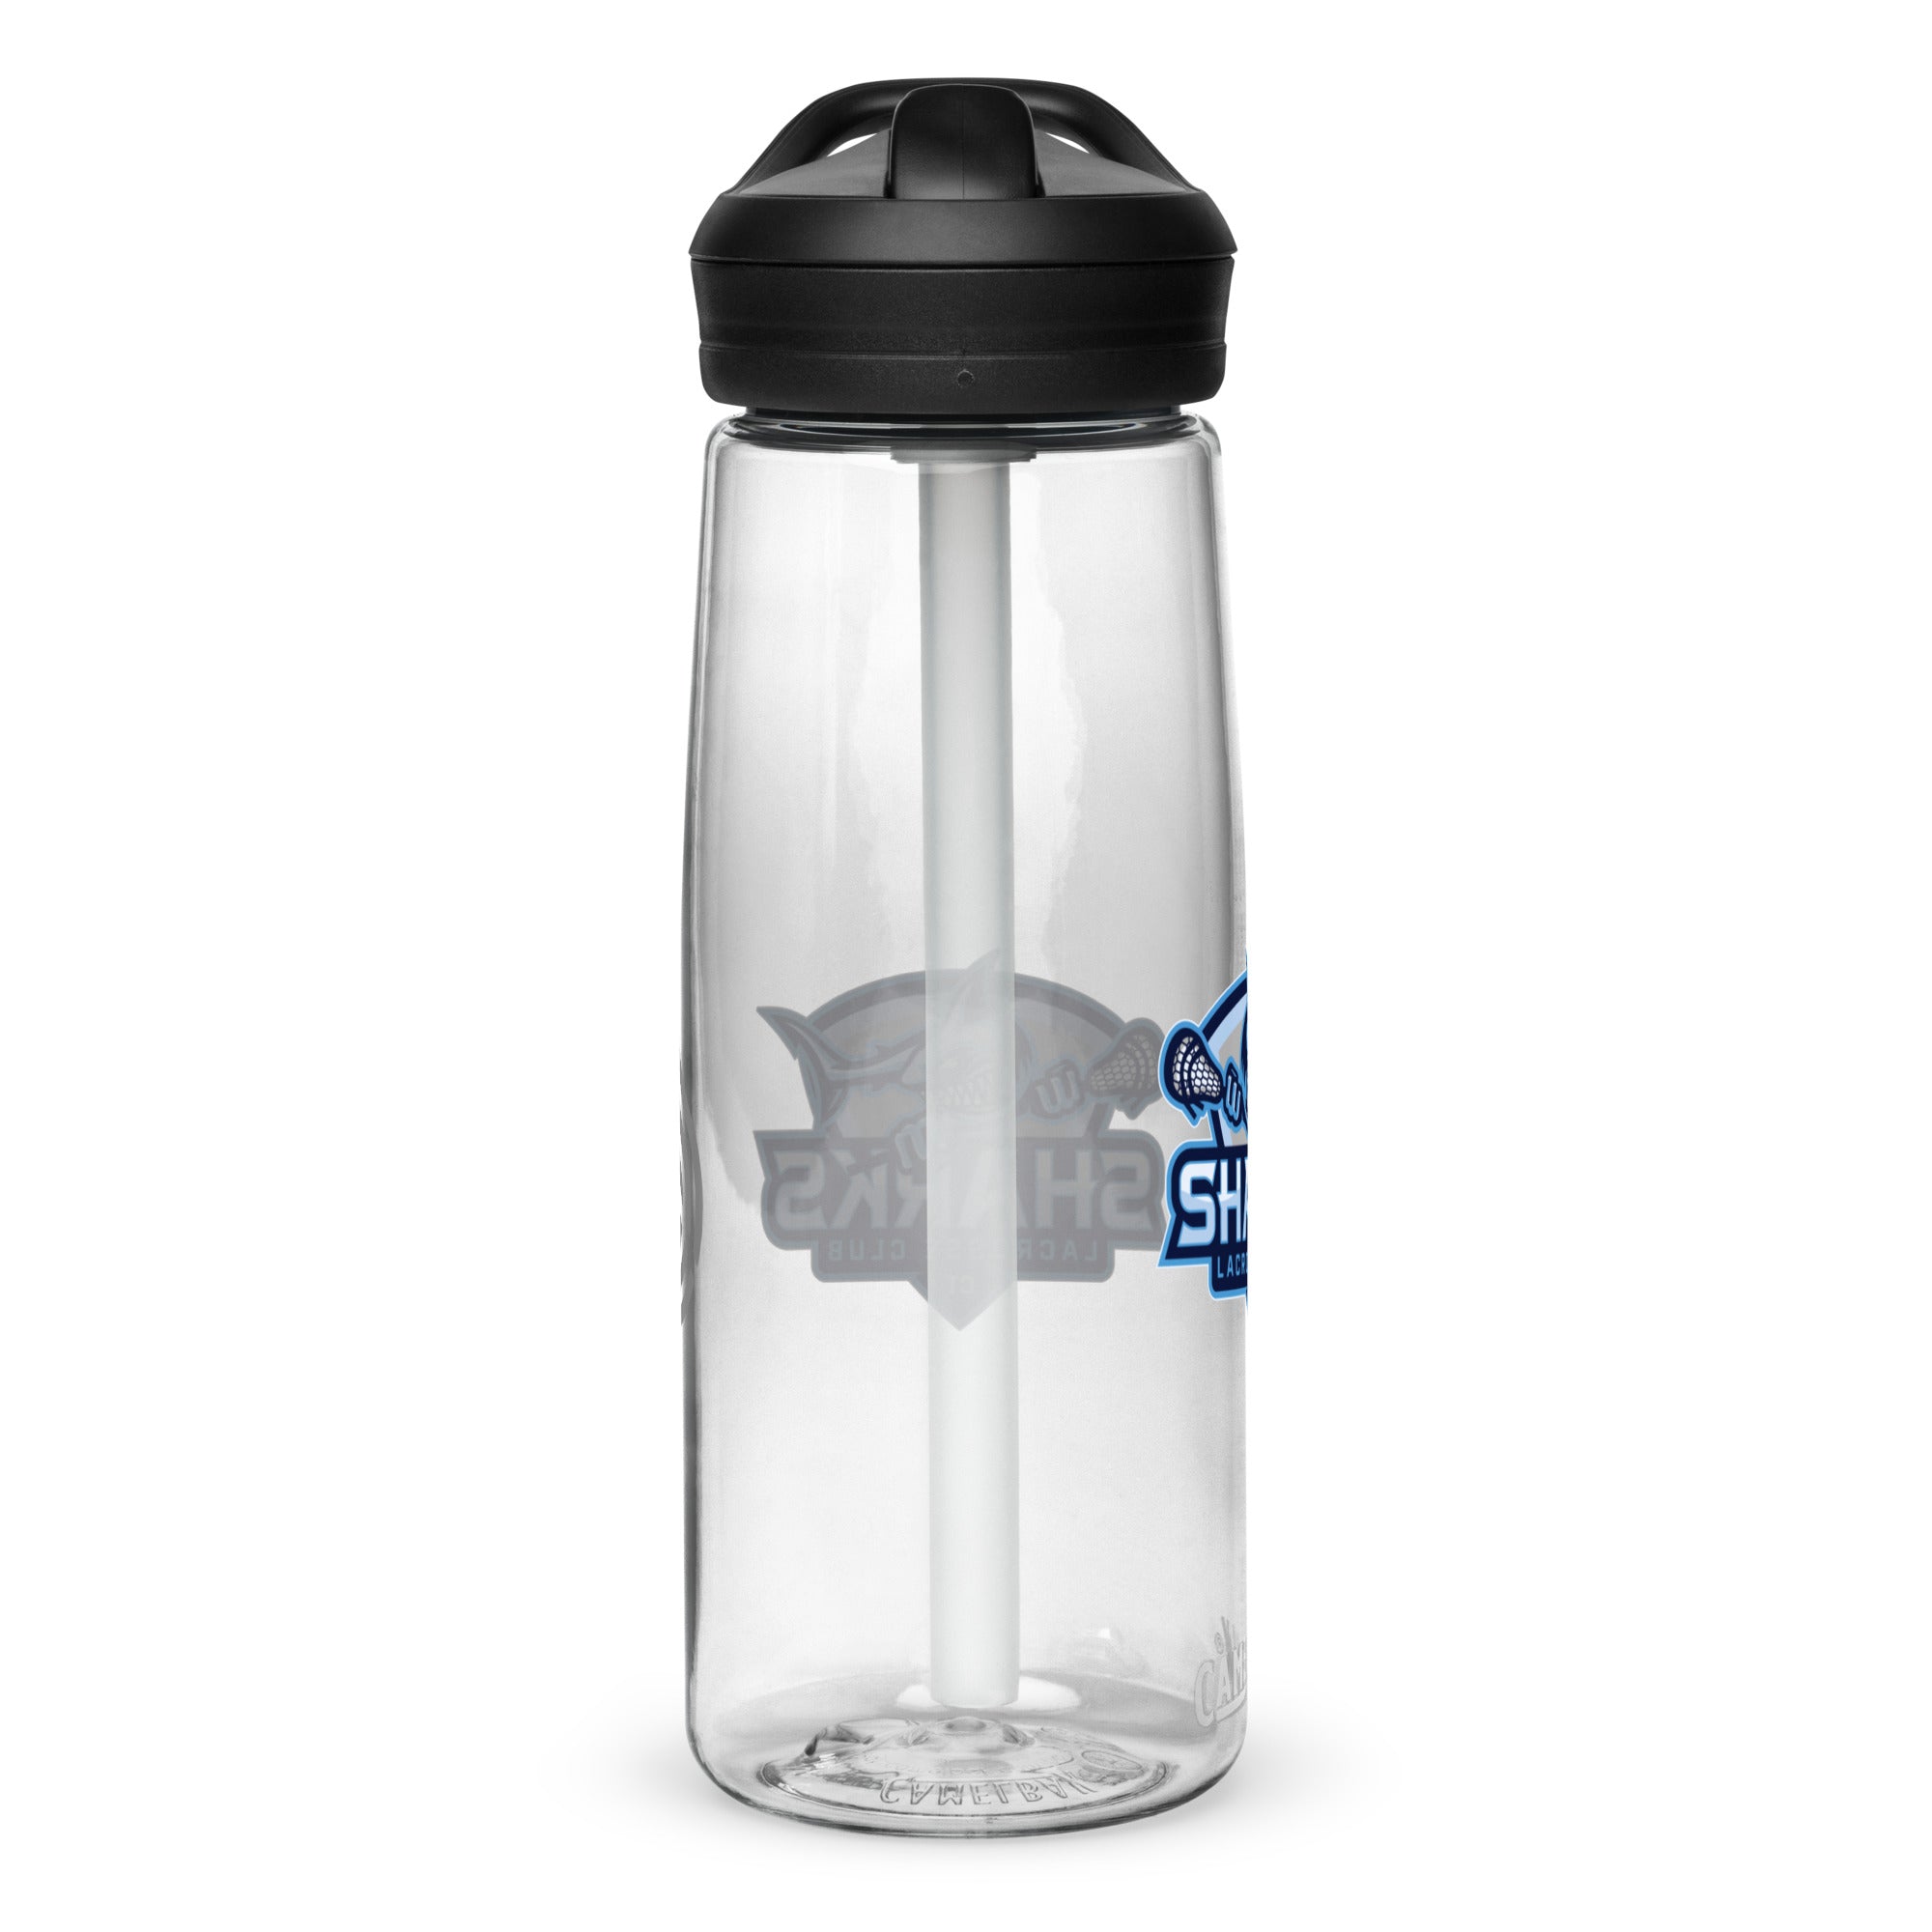 Shoreline Sports water bottle